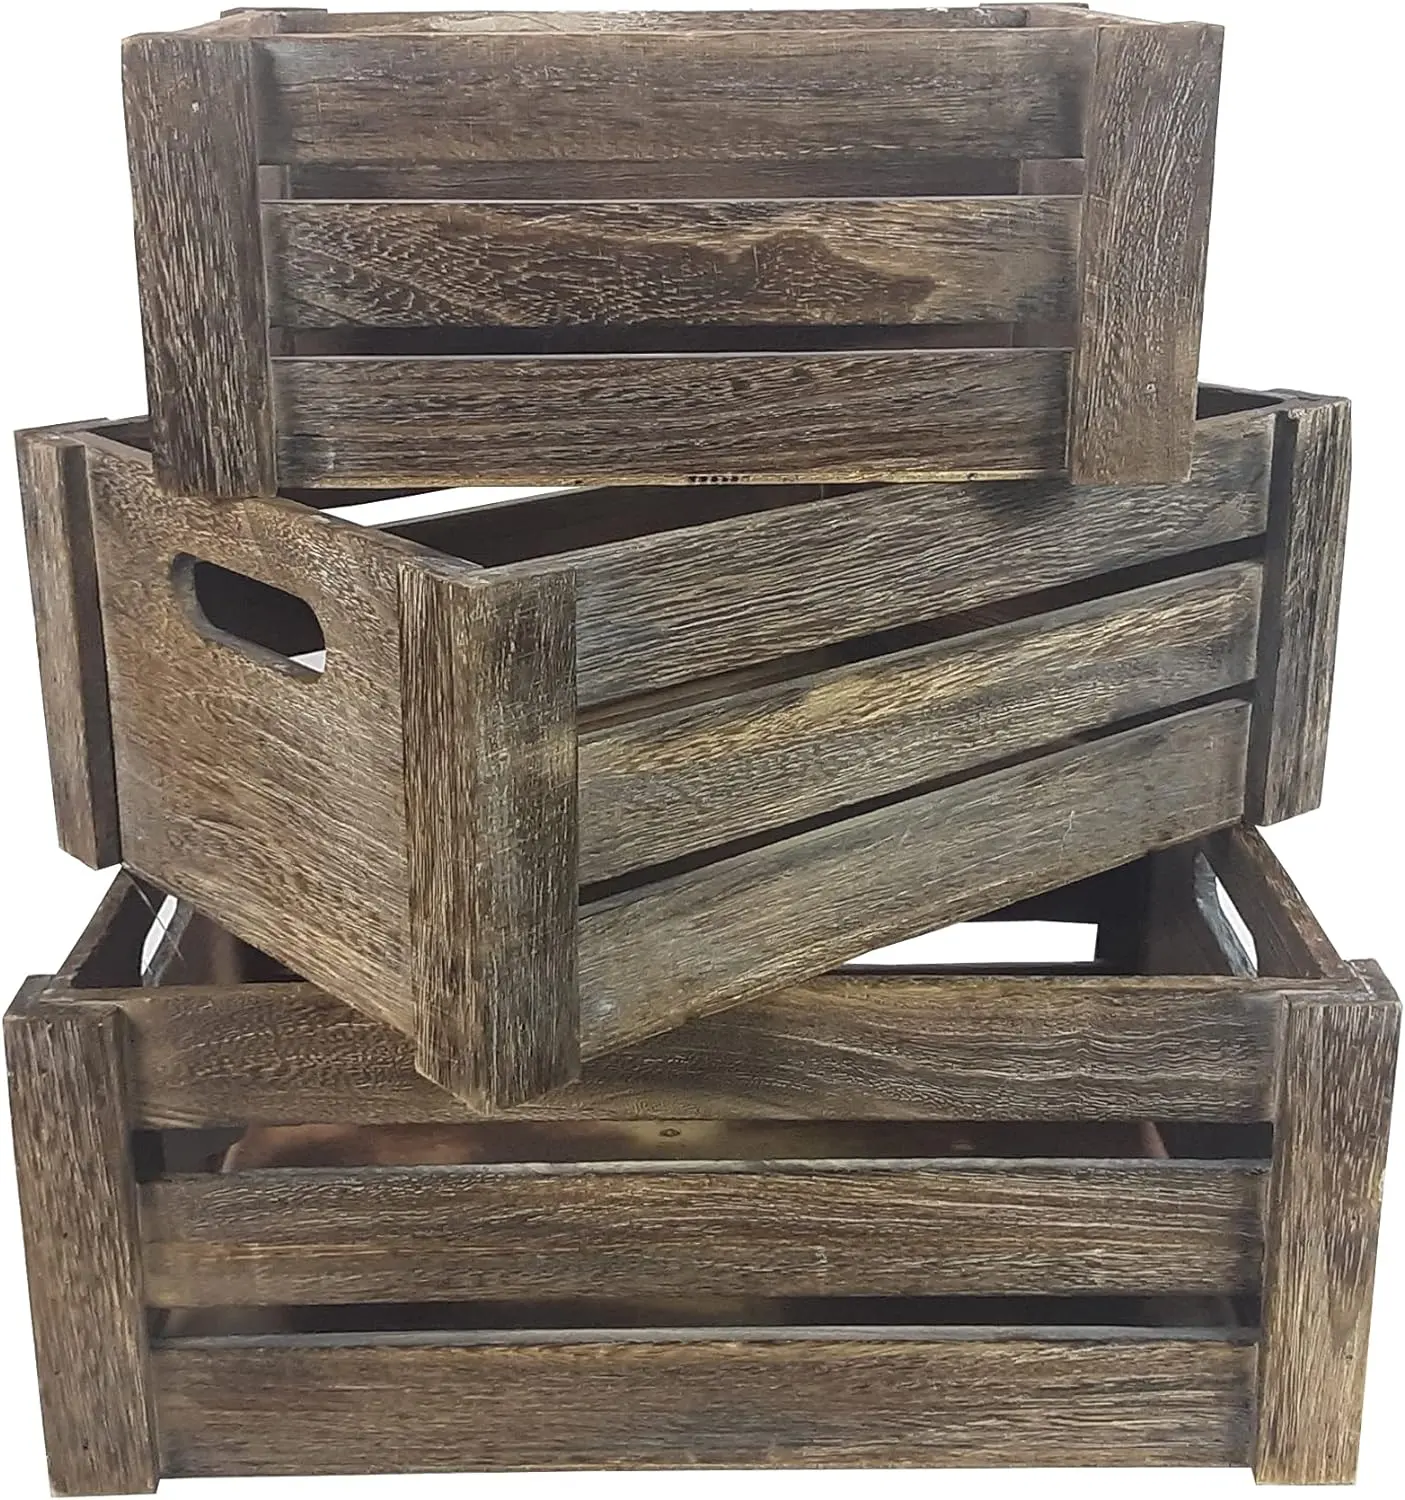 Rústico Nesting Box Basket Home Decoração Caixas com Recorte Alças Caixa De Madeira Decorativa Caixas De Madeira conjunto de 3 para Armazenamento